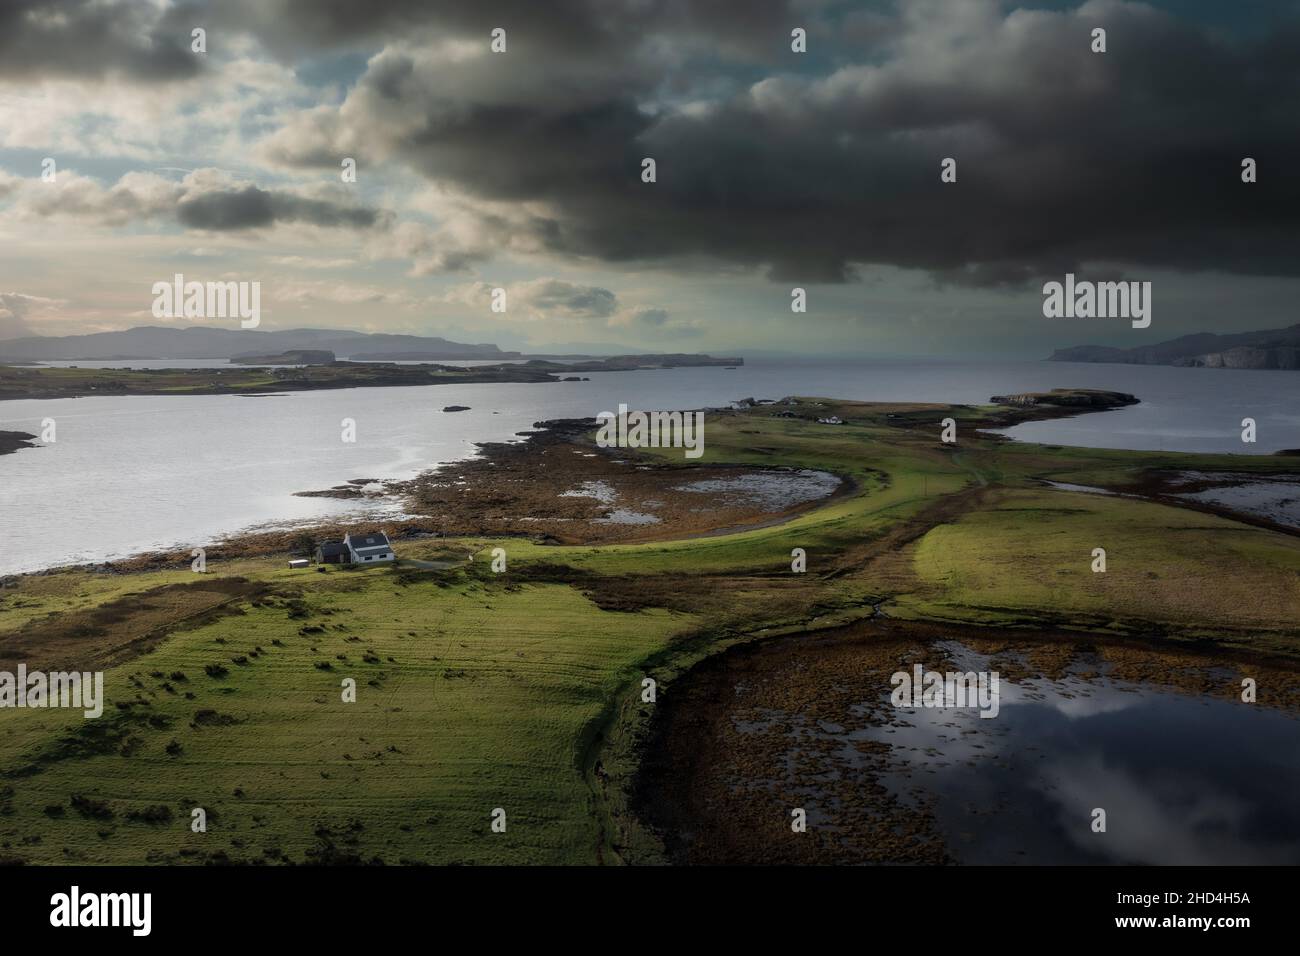 Luftaufnahme der Isle of Skye mit dramatischen Wolken und Wetter, ein Bauernhaus auf einer kleinen Insel, umgeben von Wasser Stockfoto